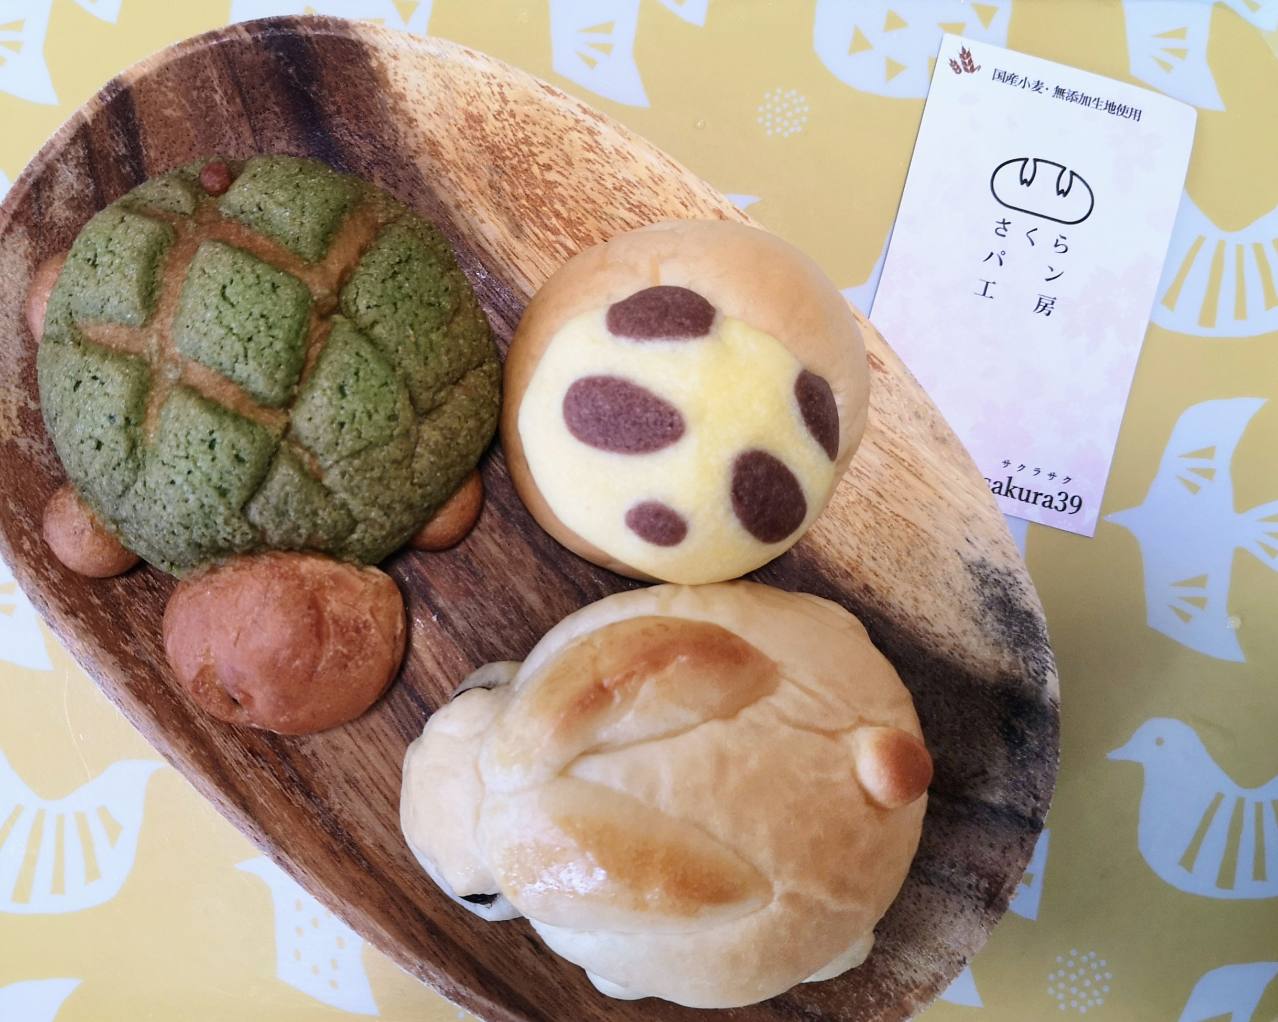 奈良県奈良市・「さくらパン工房」動物型のパン